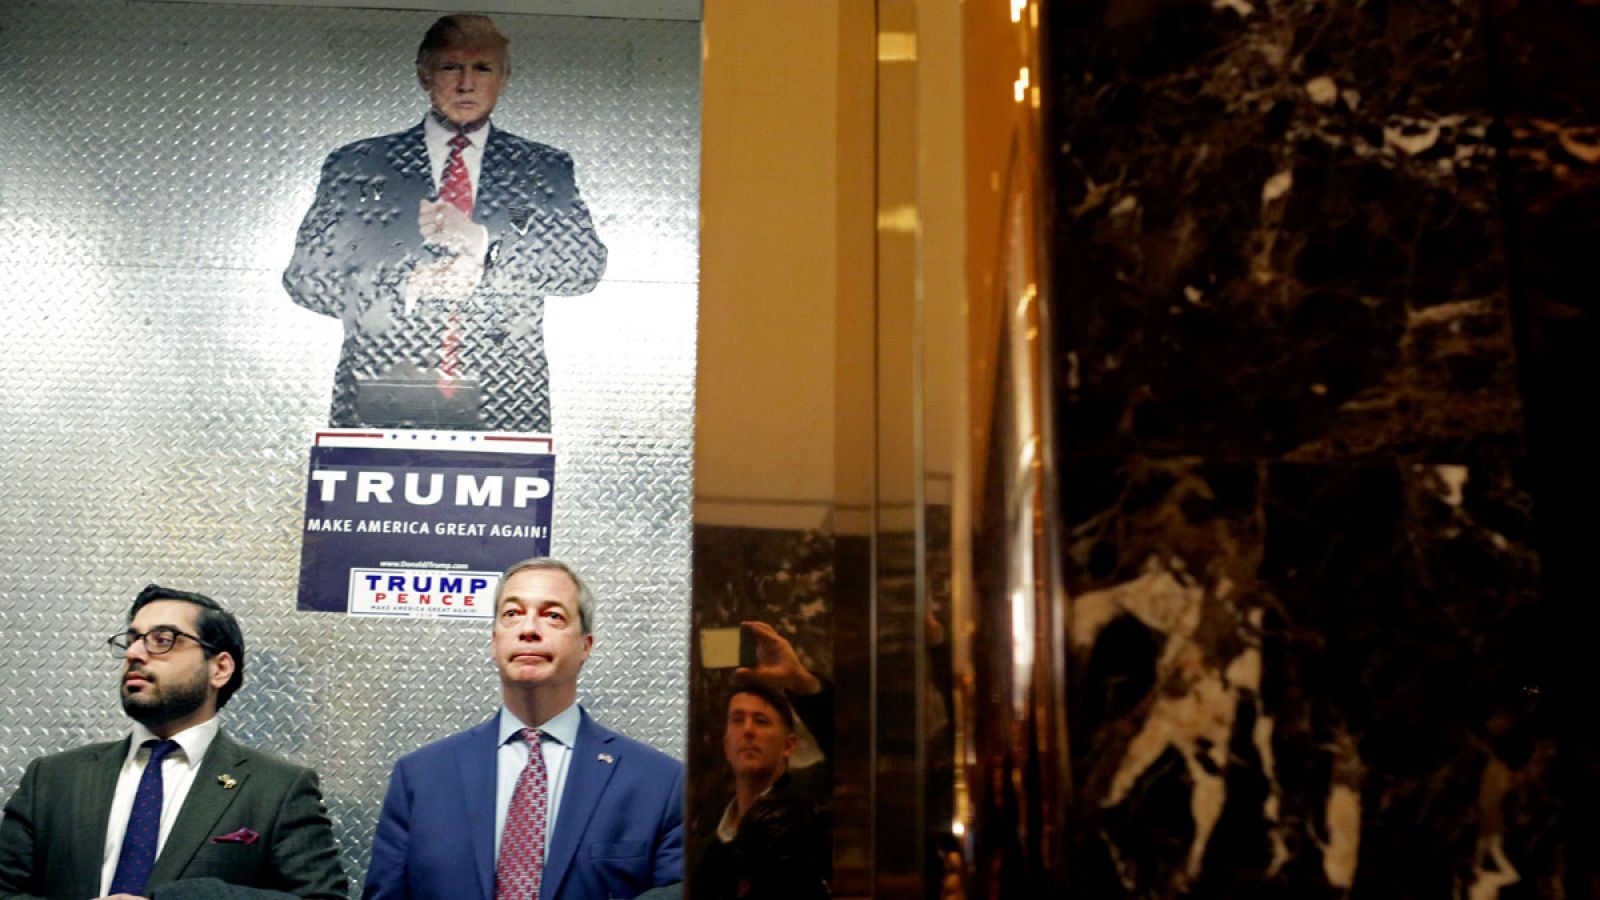 El líder del británico UKIP, Nigel Farage, en uno de los ascensores de la Trump Tower de de Nueva York este sábado, 12 de noviembre de 2016.